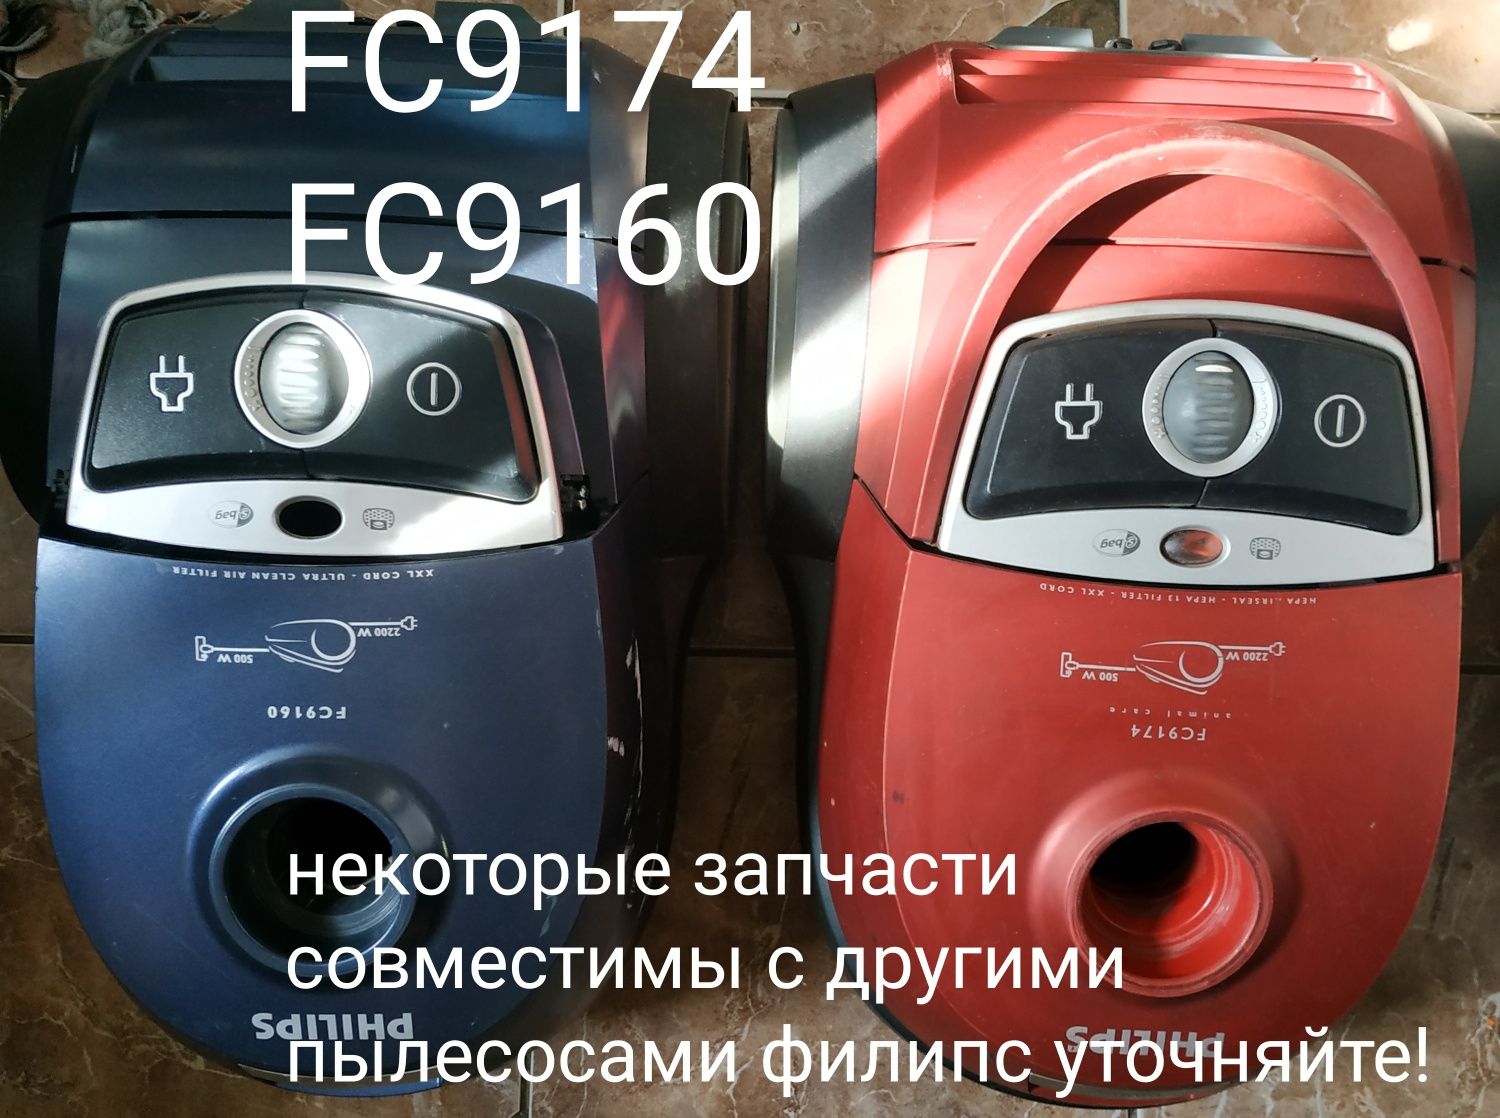 Запчасти филипс  FC 9174/01, FC9103, FC 9204,FC 9352/01,FC 9060, FC842